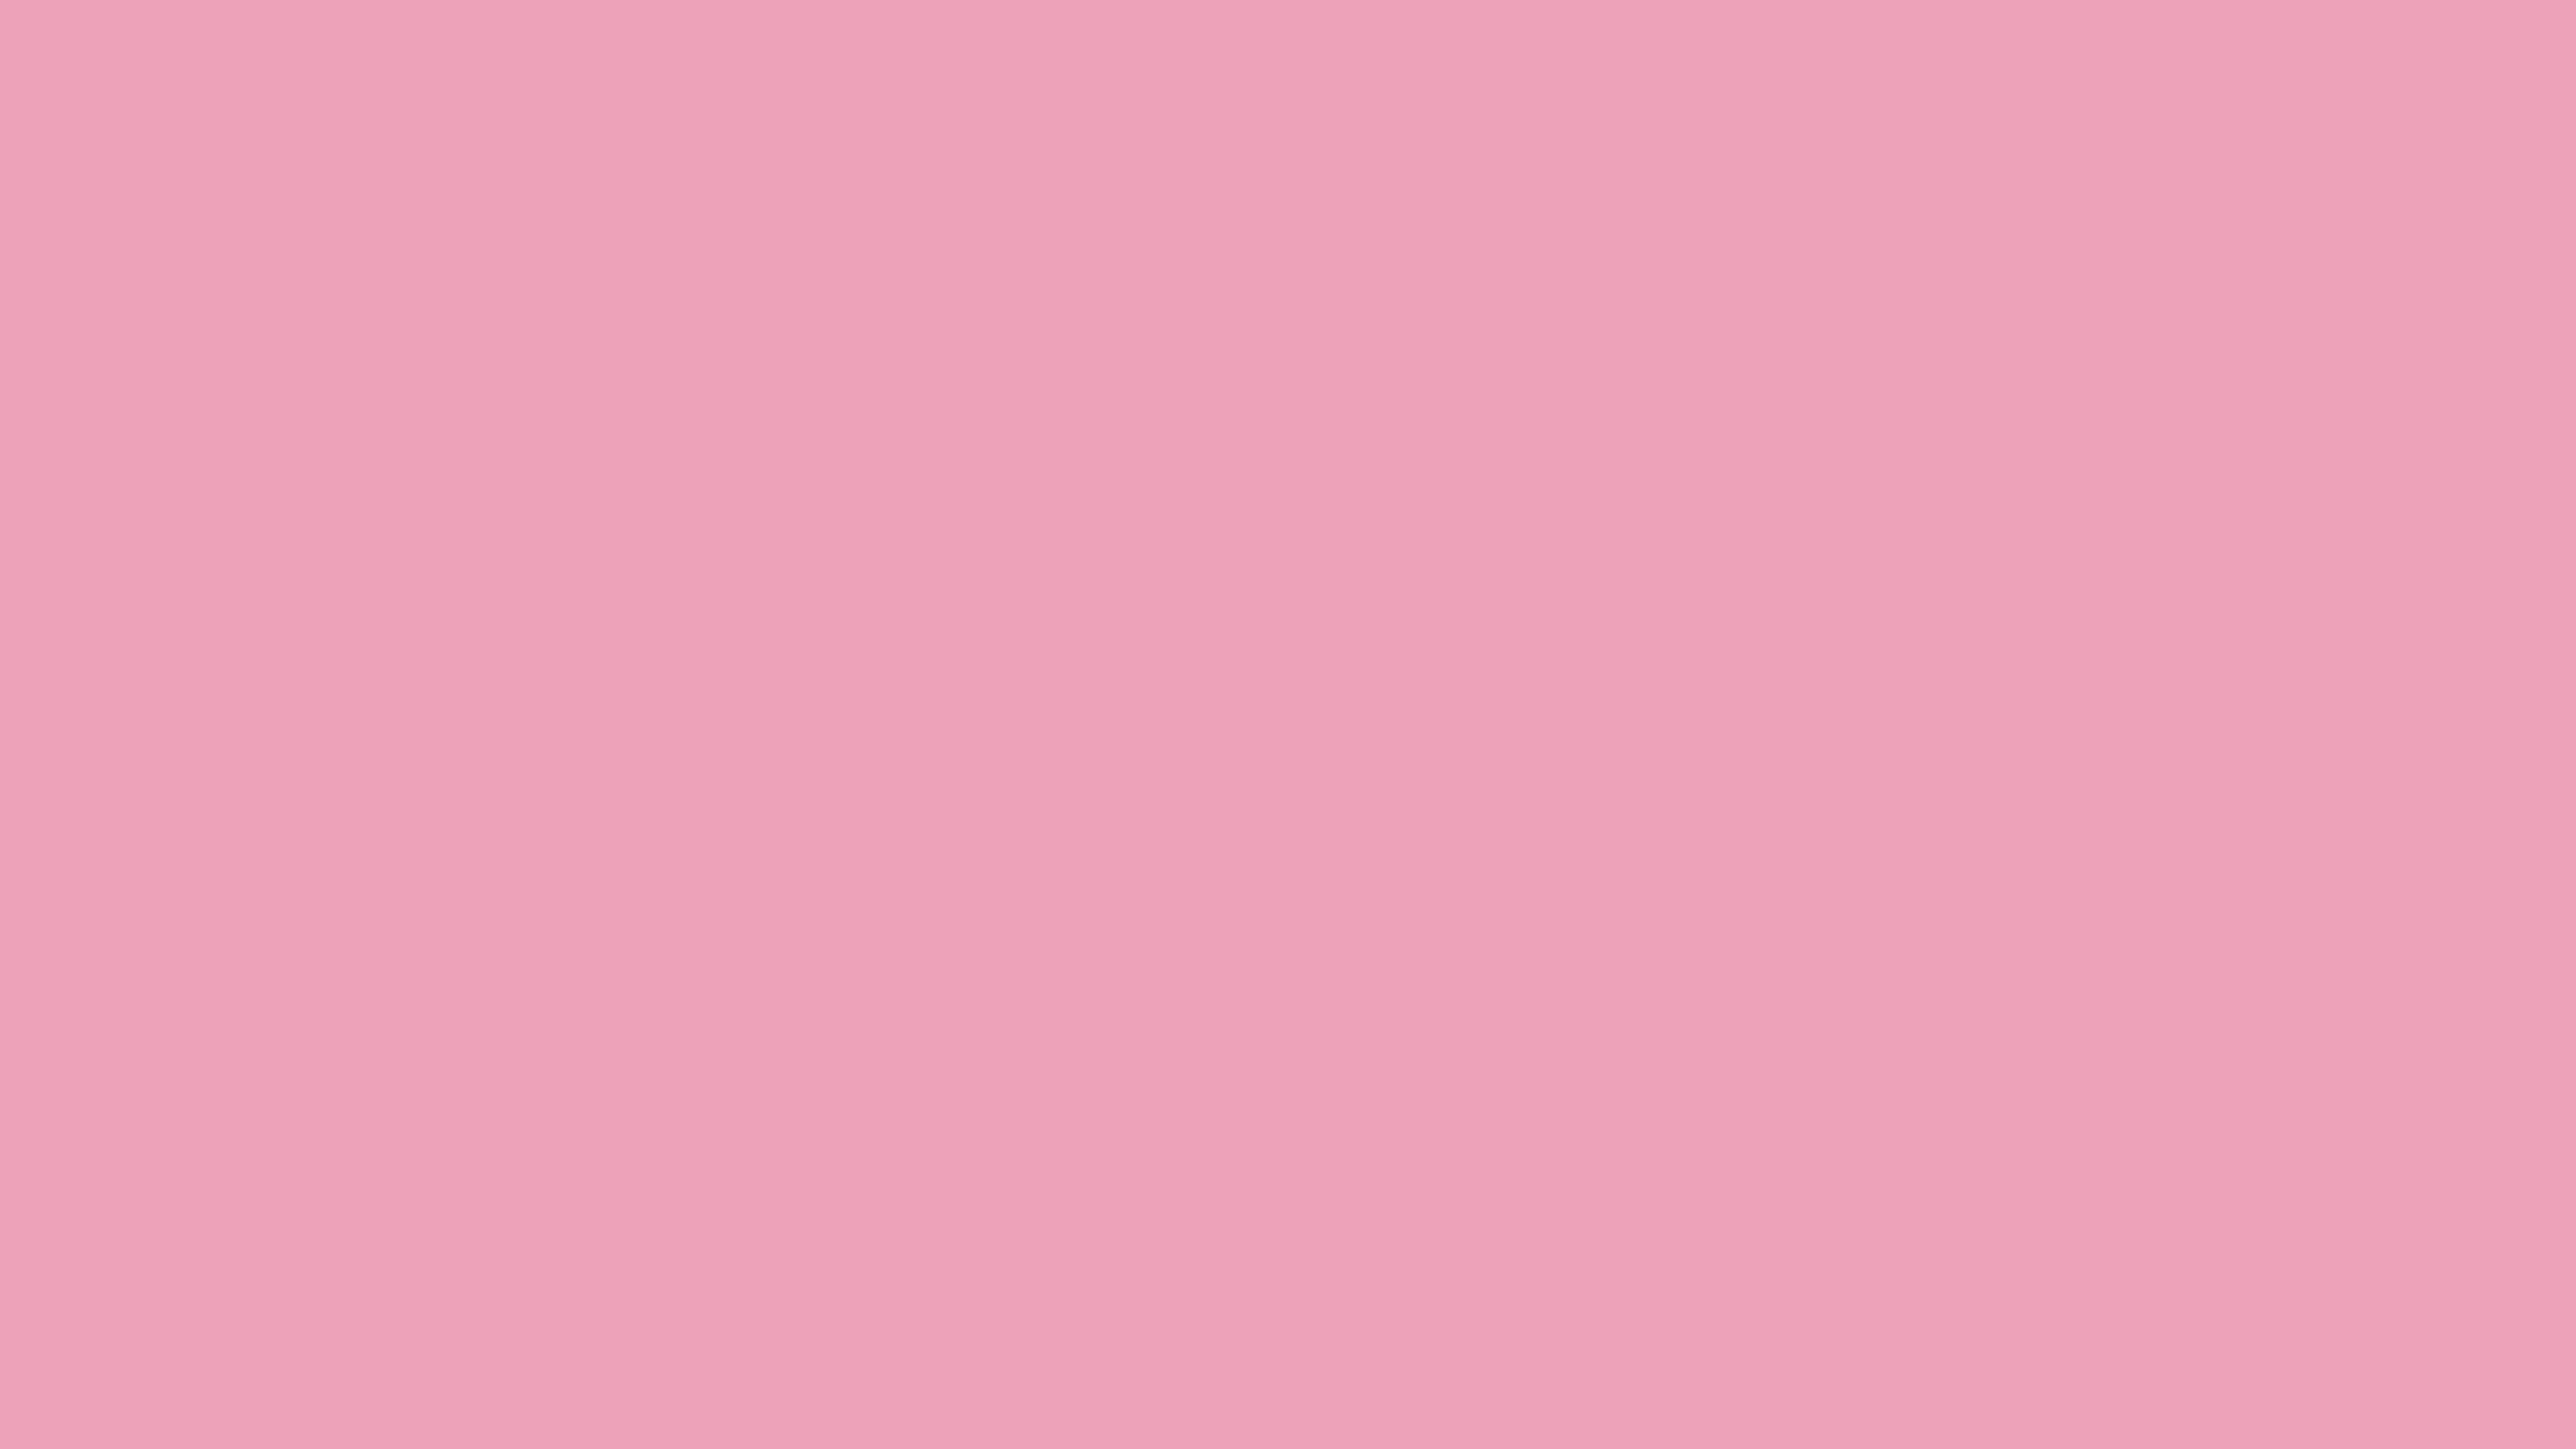 99 70 10. Ffb6c1 цвет. Светло розовый цвет. Розовый фон пастельный цвет. Пастельный розовый.